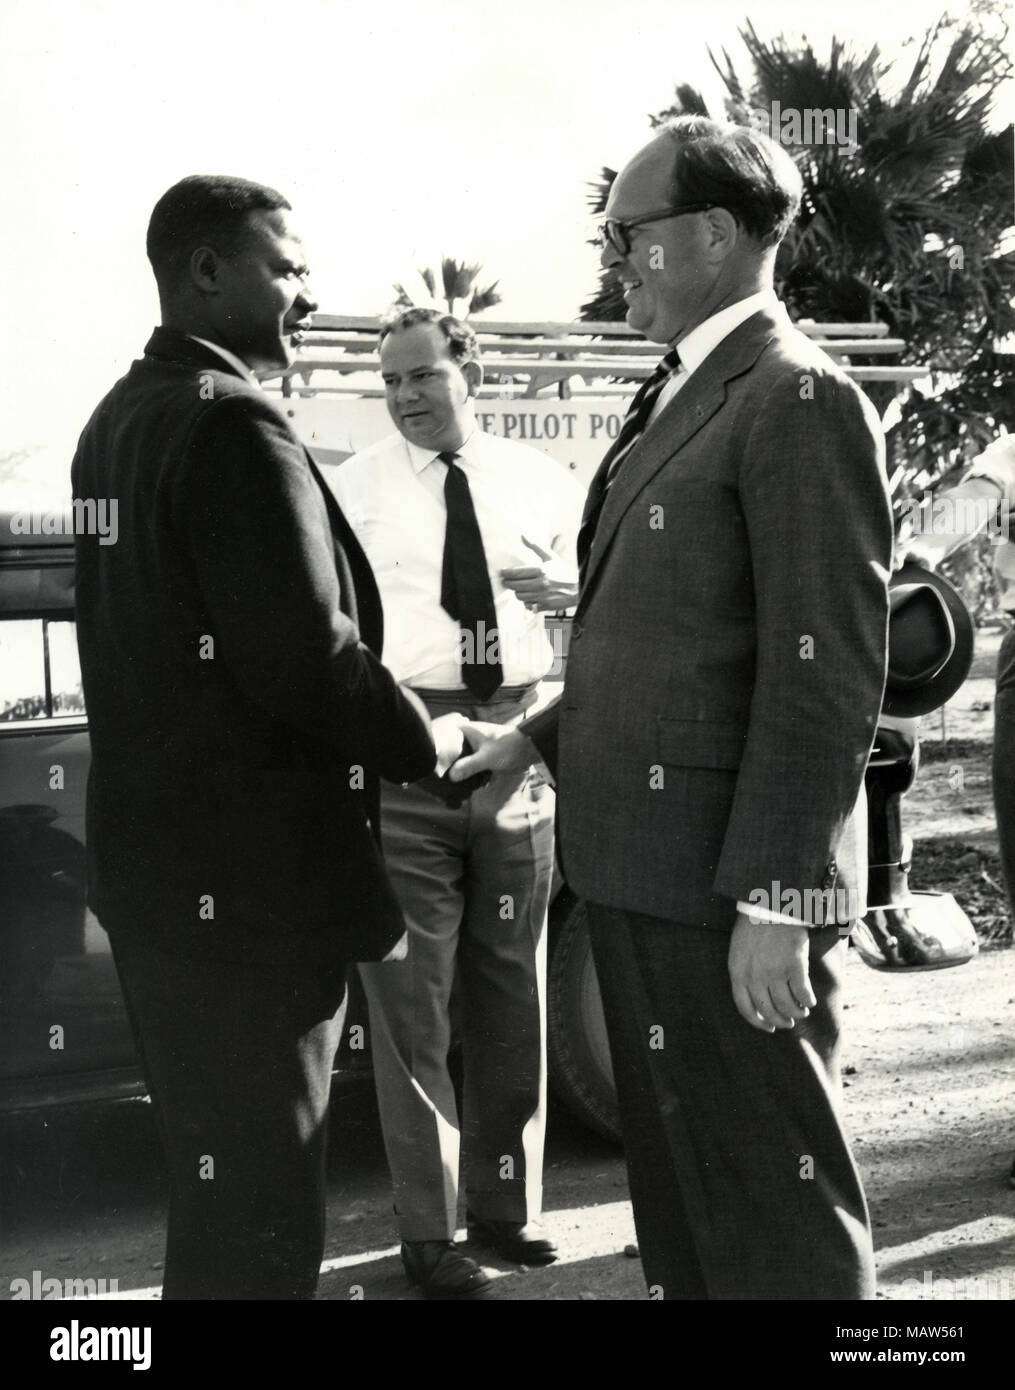 Le ministre de l'agriculture africains Mwamba et E.M. E. Sicely GM de la confiance, de la Kafue Sélection rhodésienne Polder pilote Rhodésie du Sud, Zambie, 1959 Banque D'Images